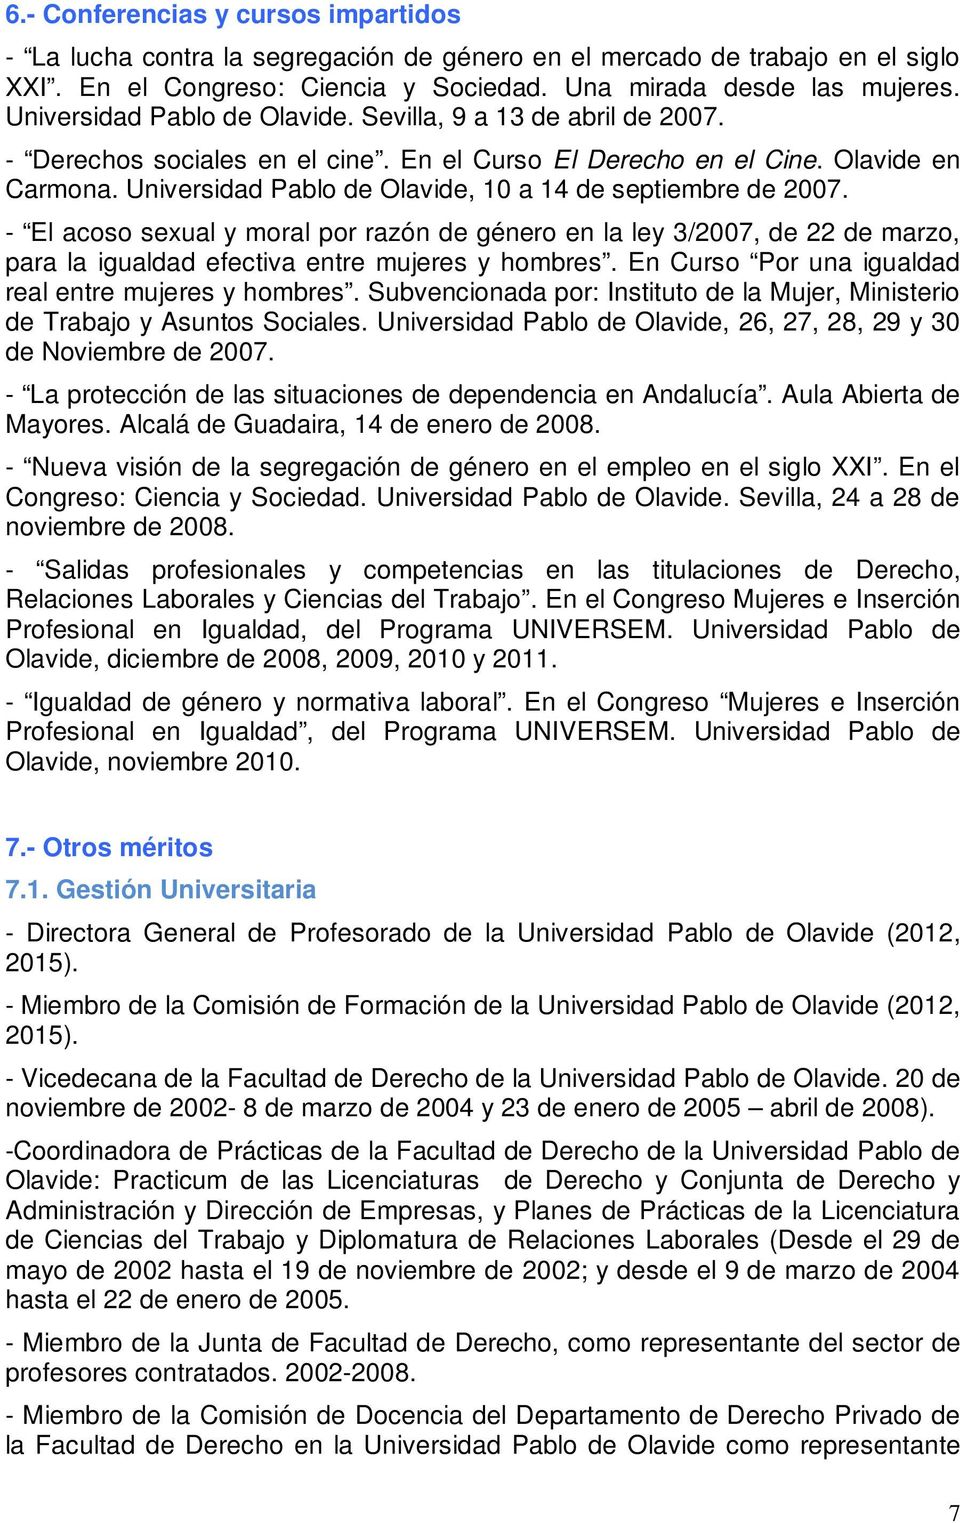 Universidad Pablo de Olavide, 10 a 14 de septiembre de 2007. - El acoso sexual y moral por razón de género en la ley 3/2007, de 22 de marzo, para la igualdad efectiva entre mujeres y hombres.